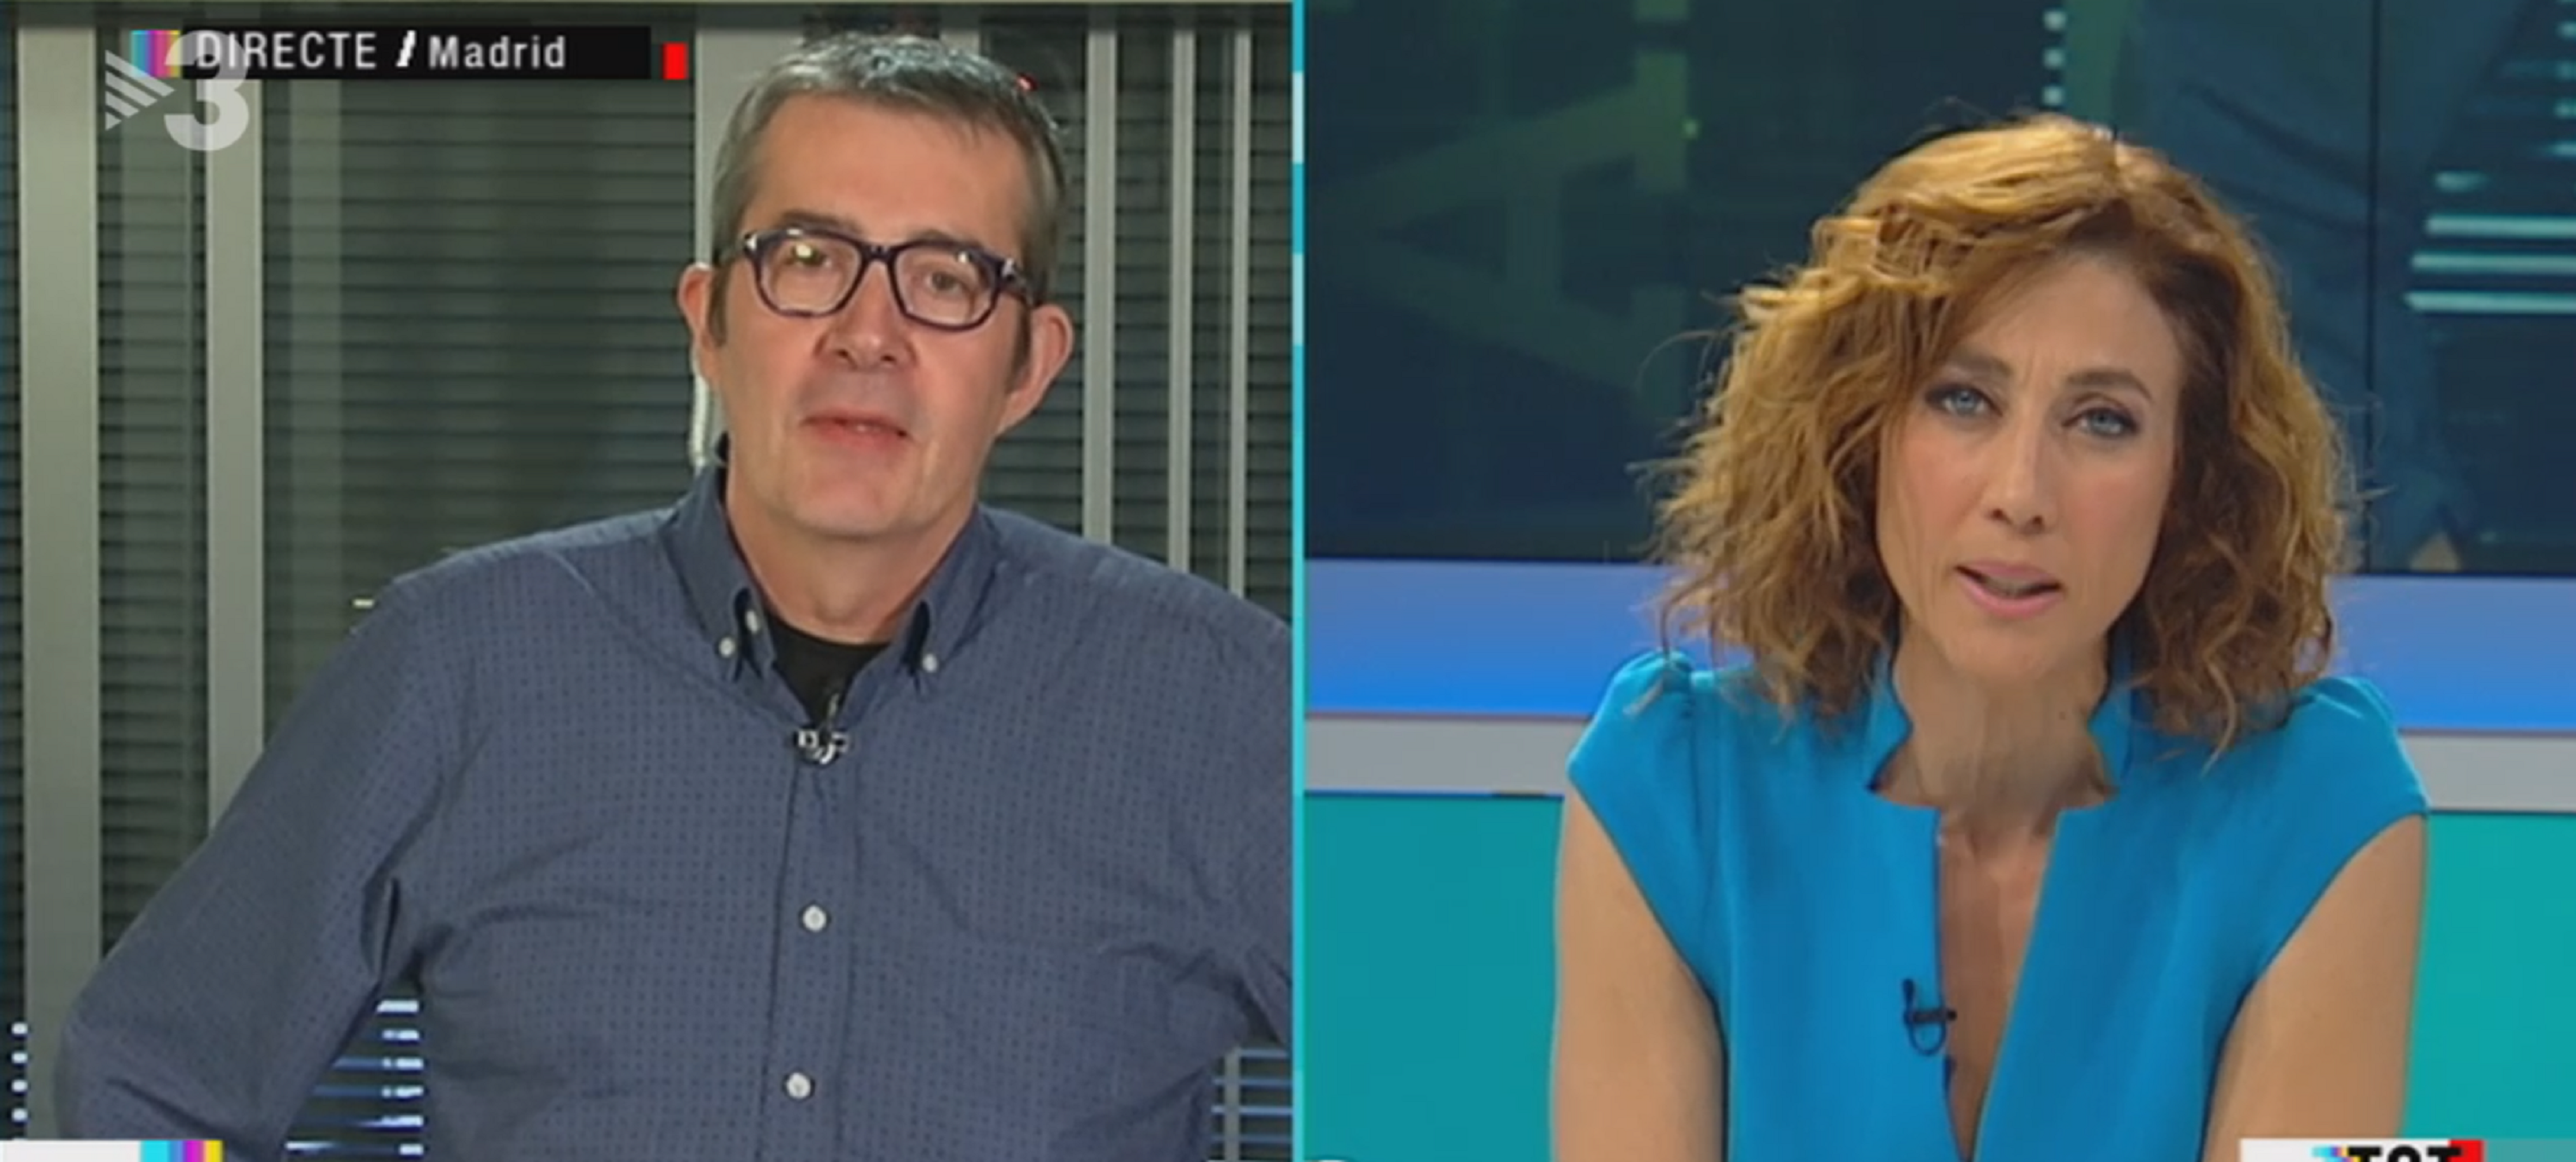 Tensió a TV3: "Màxim Huerta es una petarda, y no soy homófobo"